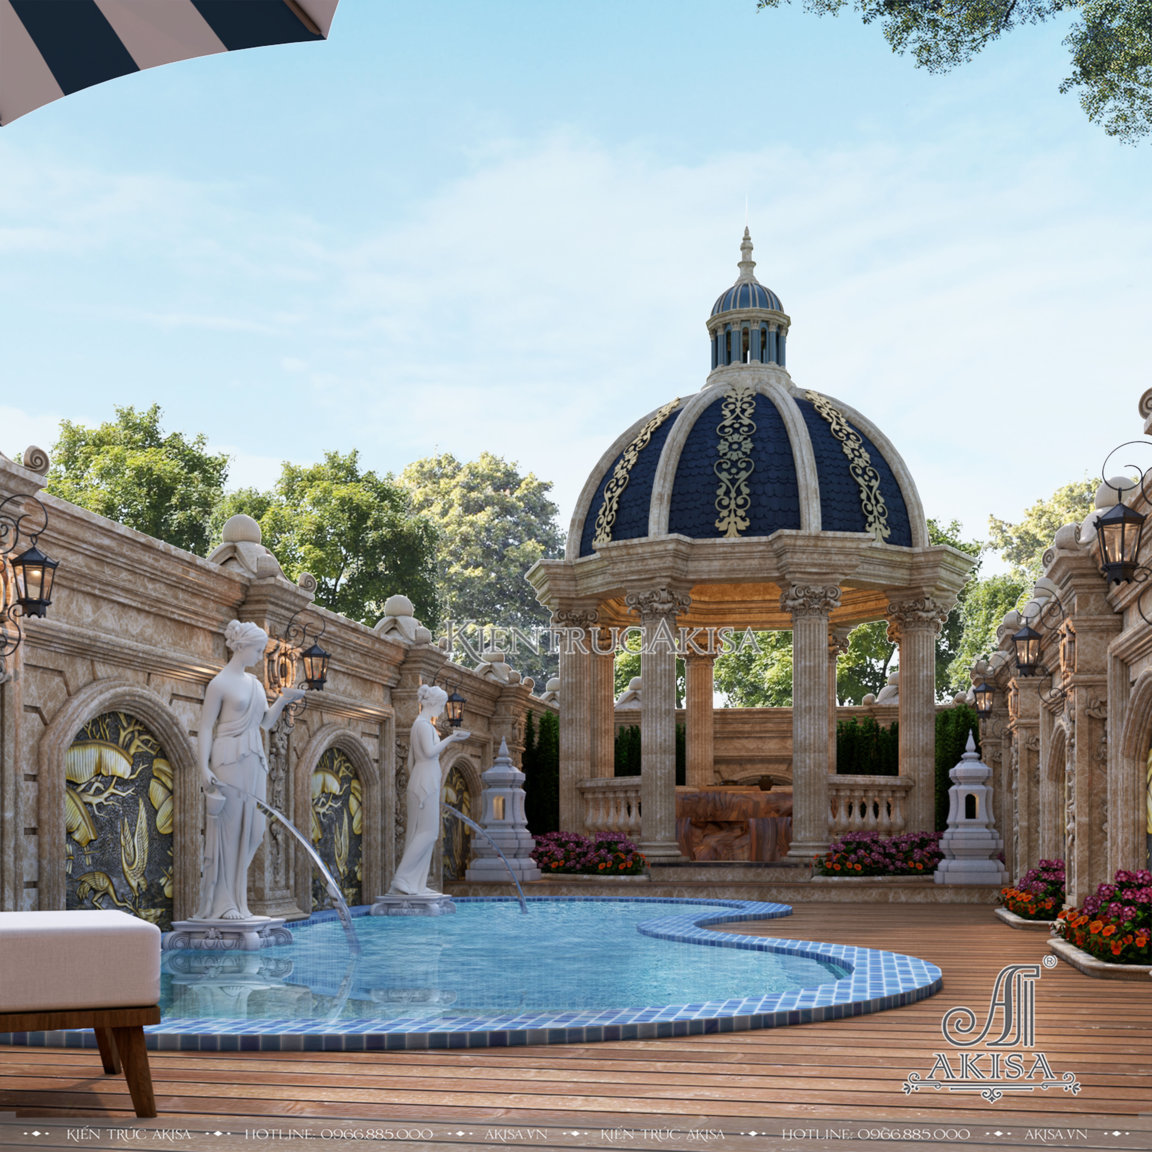  Kiến trúc và sân vườn phong cách cổ điển Pháp thu hút bởi những hệ cột đồ sộ, thức cột tinh xảo cùng mái vòm uy nghi kết hợp với bể bơi hiện đại, tạo nên vẻ đẹp quý phái, quyến rũ